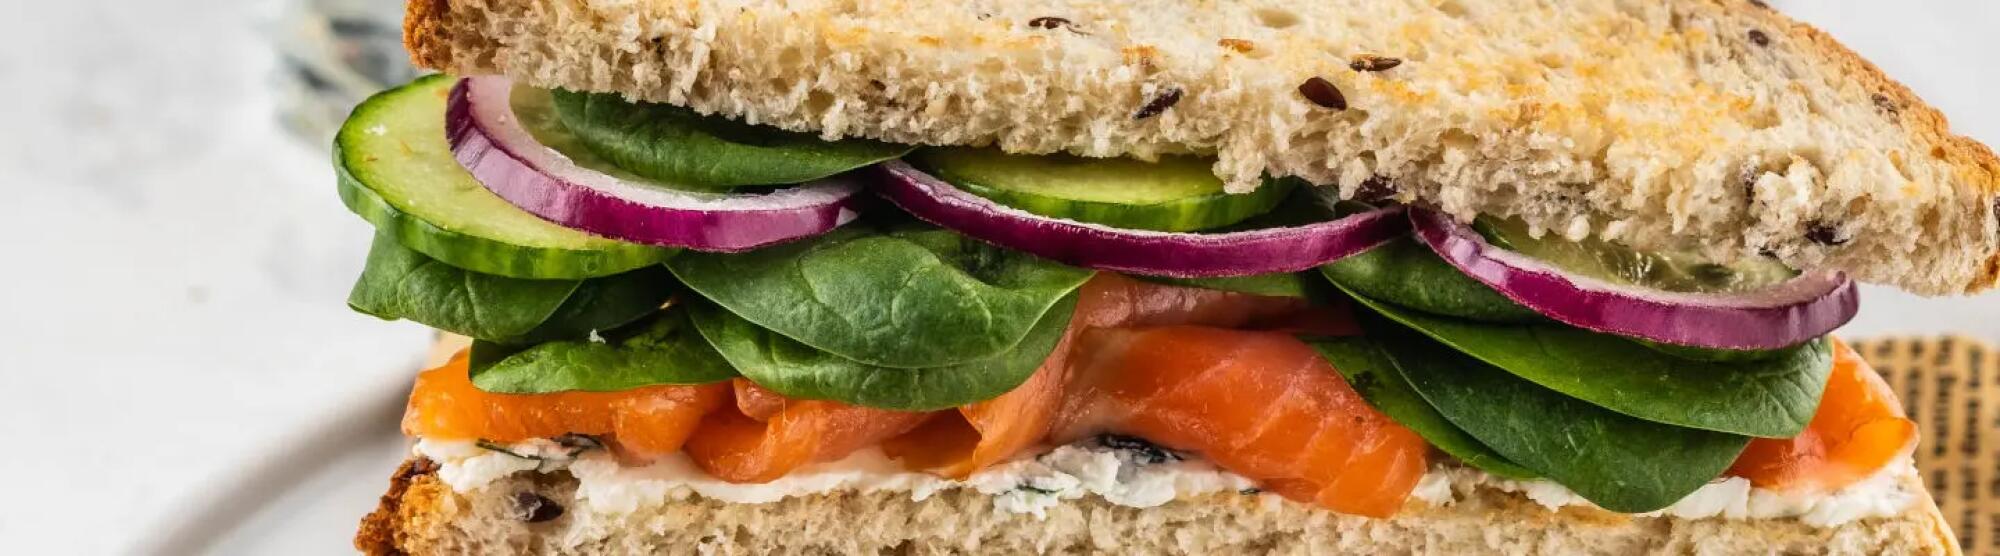 Recette : Club-sandwich au saumon fumé et fromage